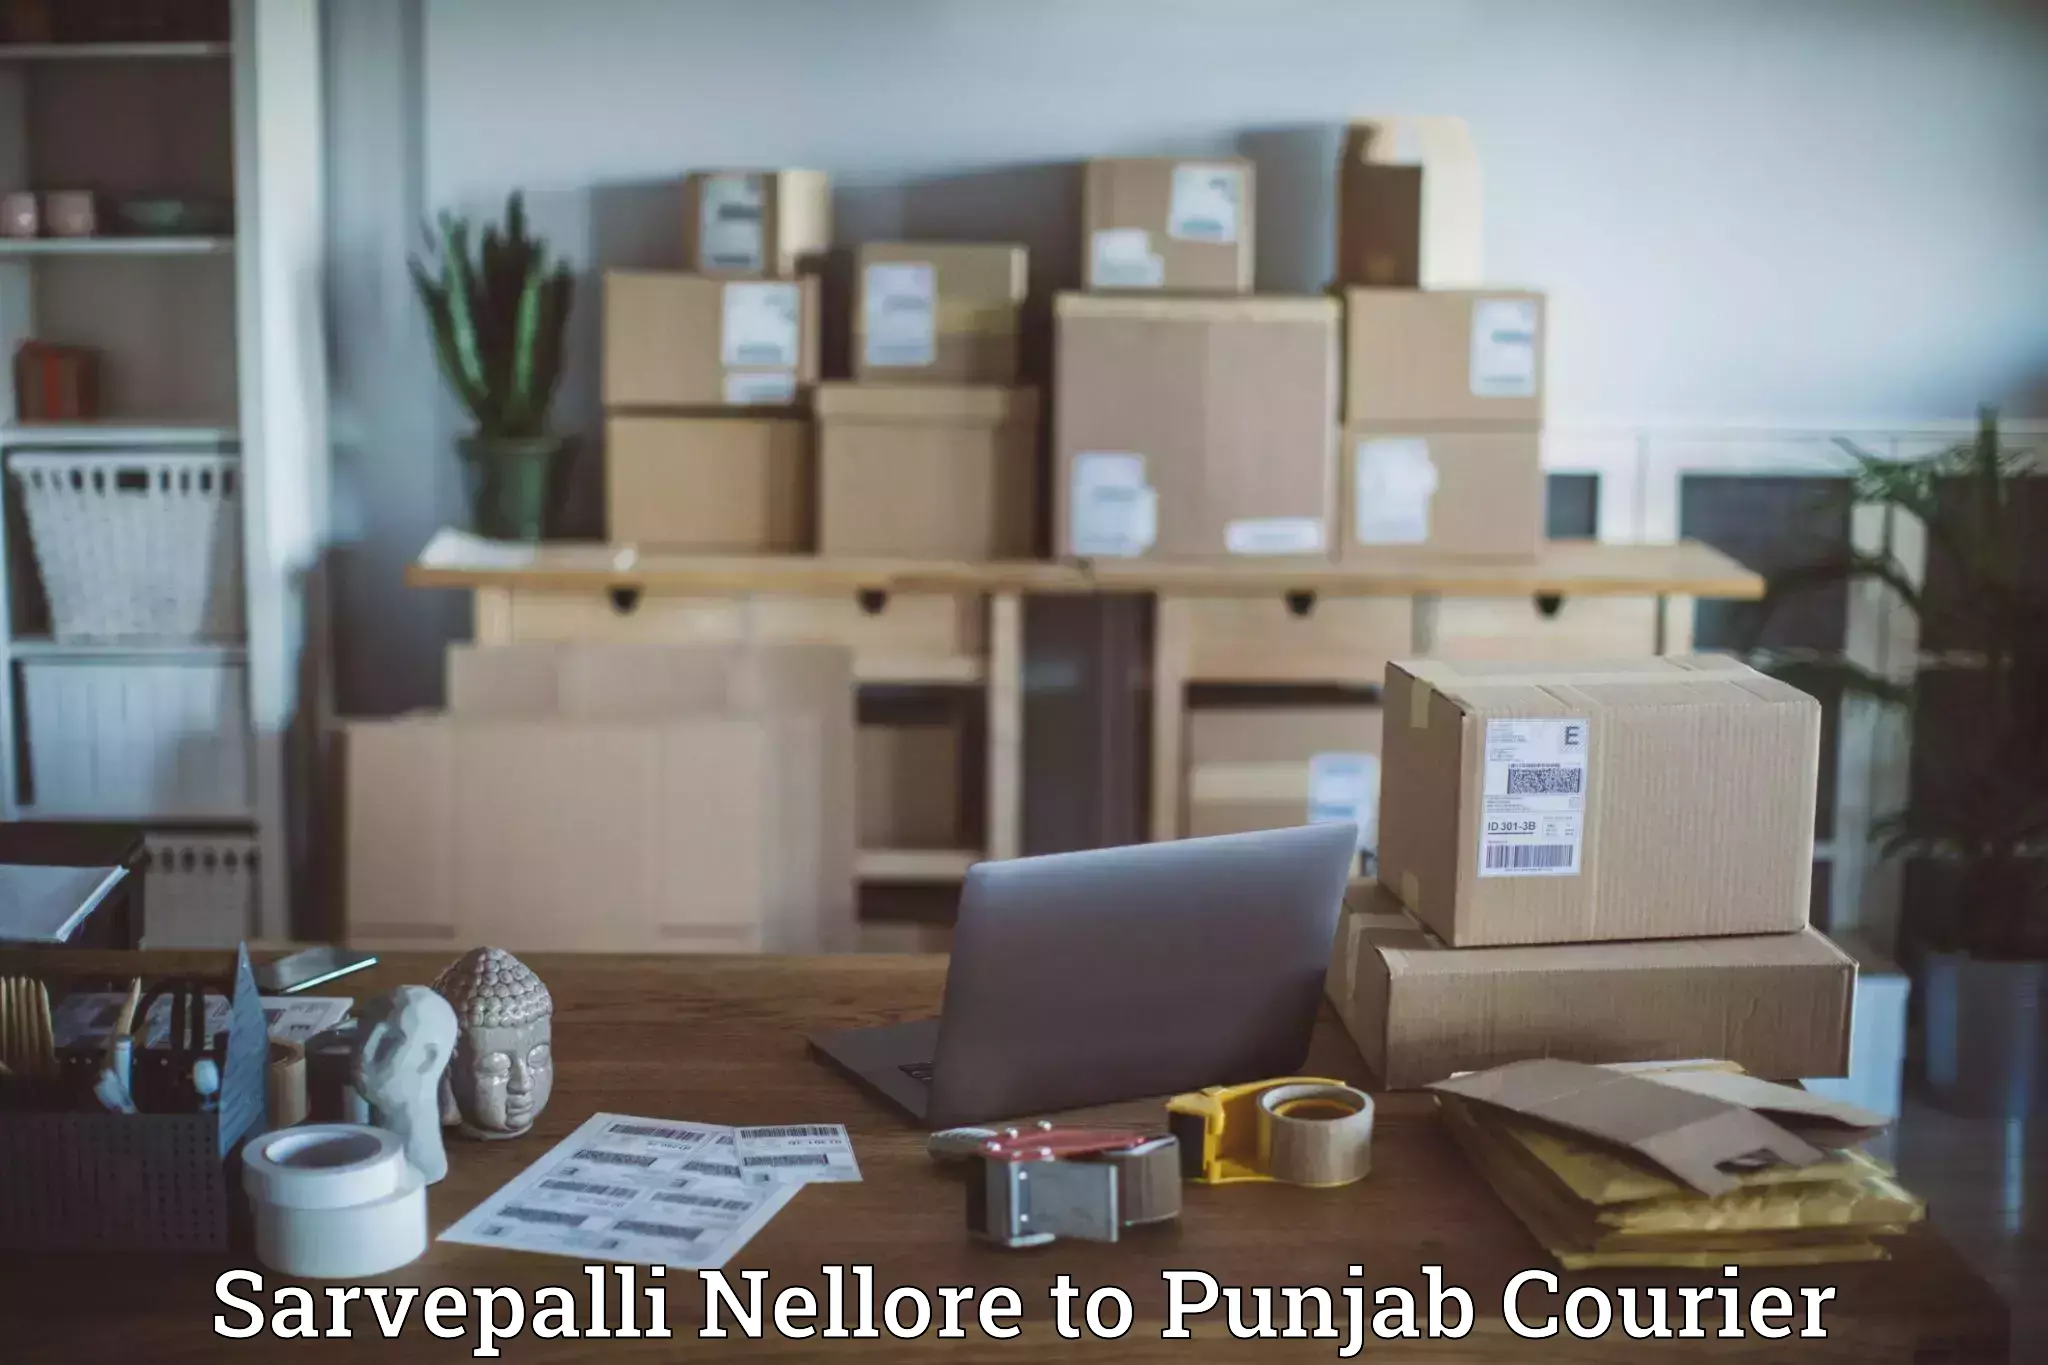 Local delivery service Sarvepalli Nellore to Sunam